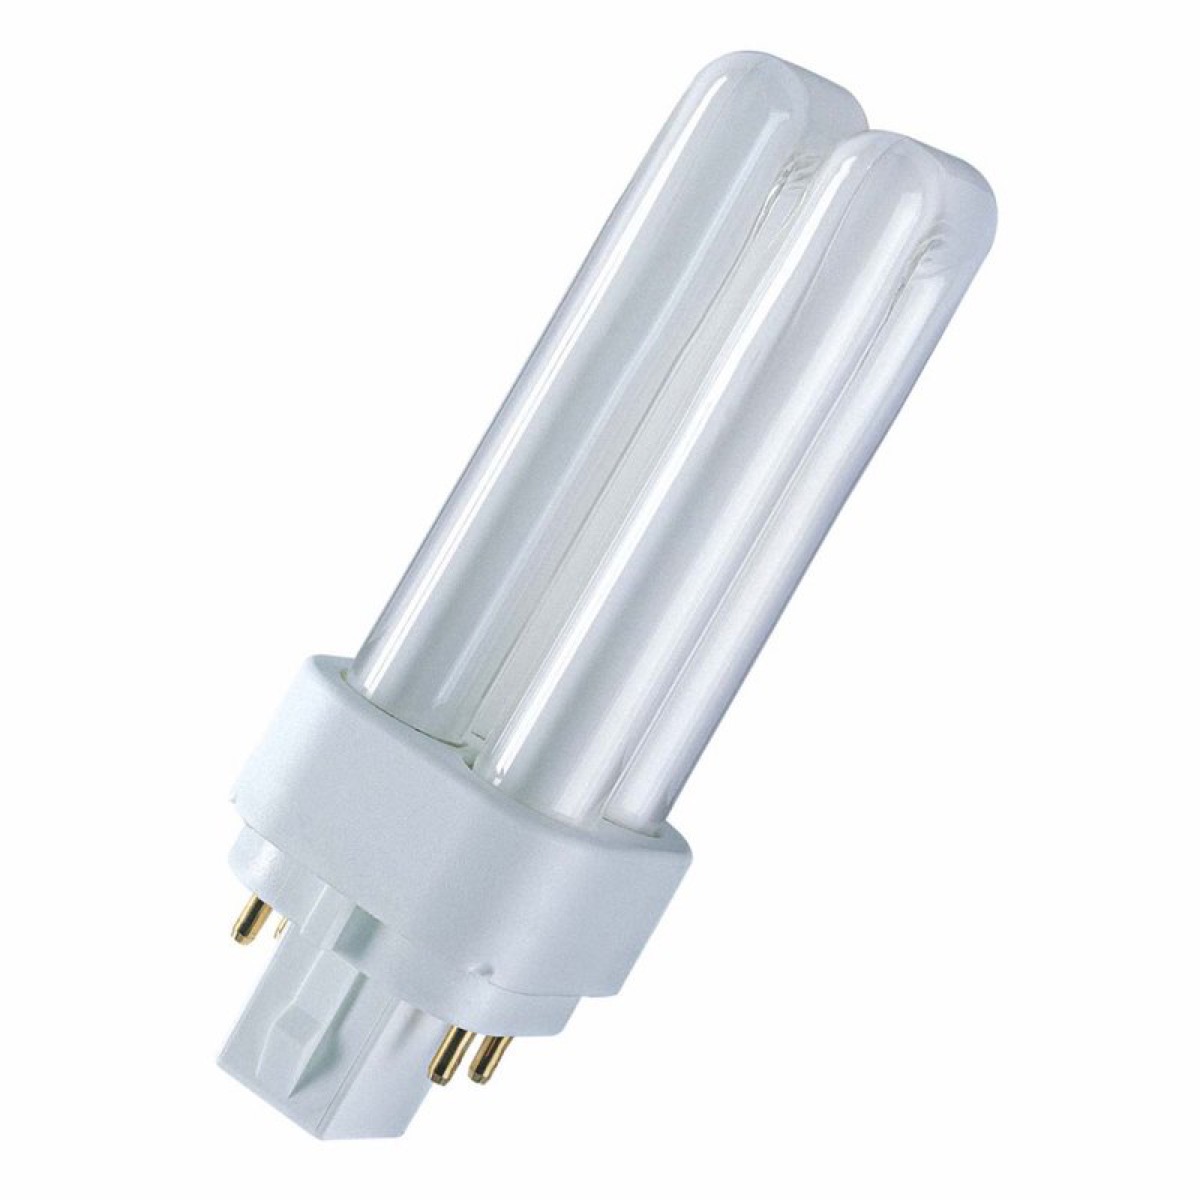 UNI-ElektroOSRAM Kompaktlampe G24q-3 26W Warmton